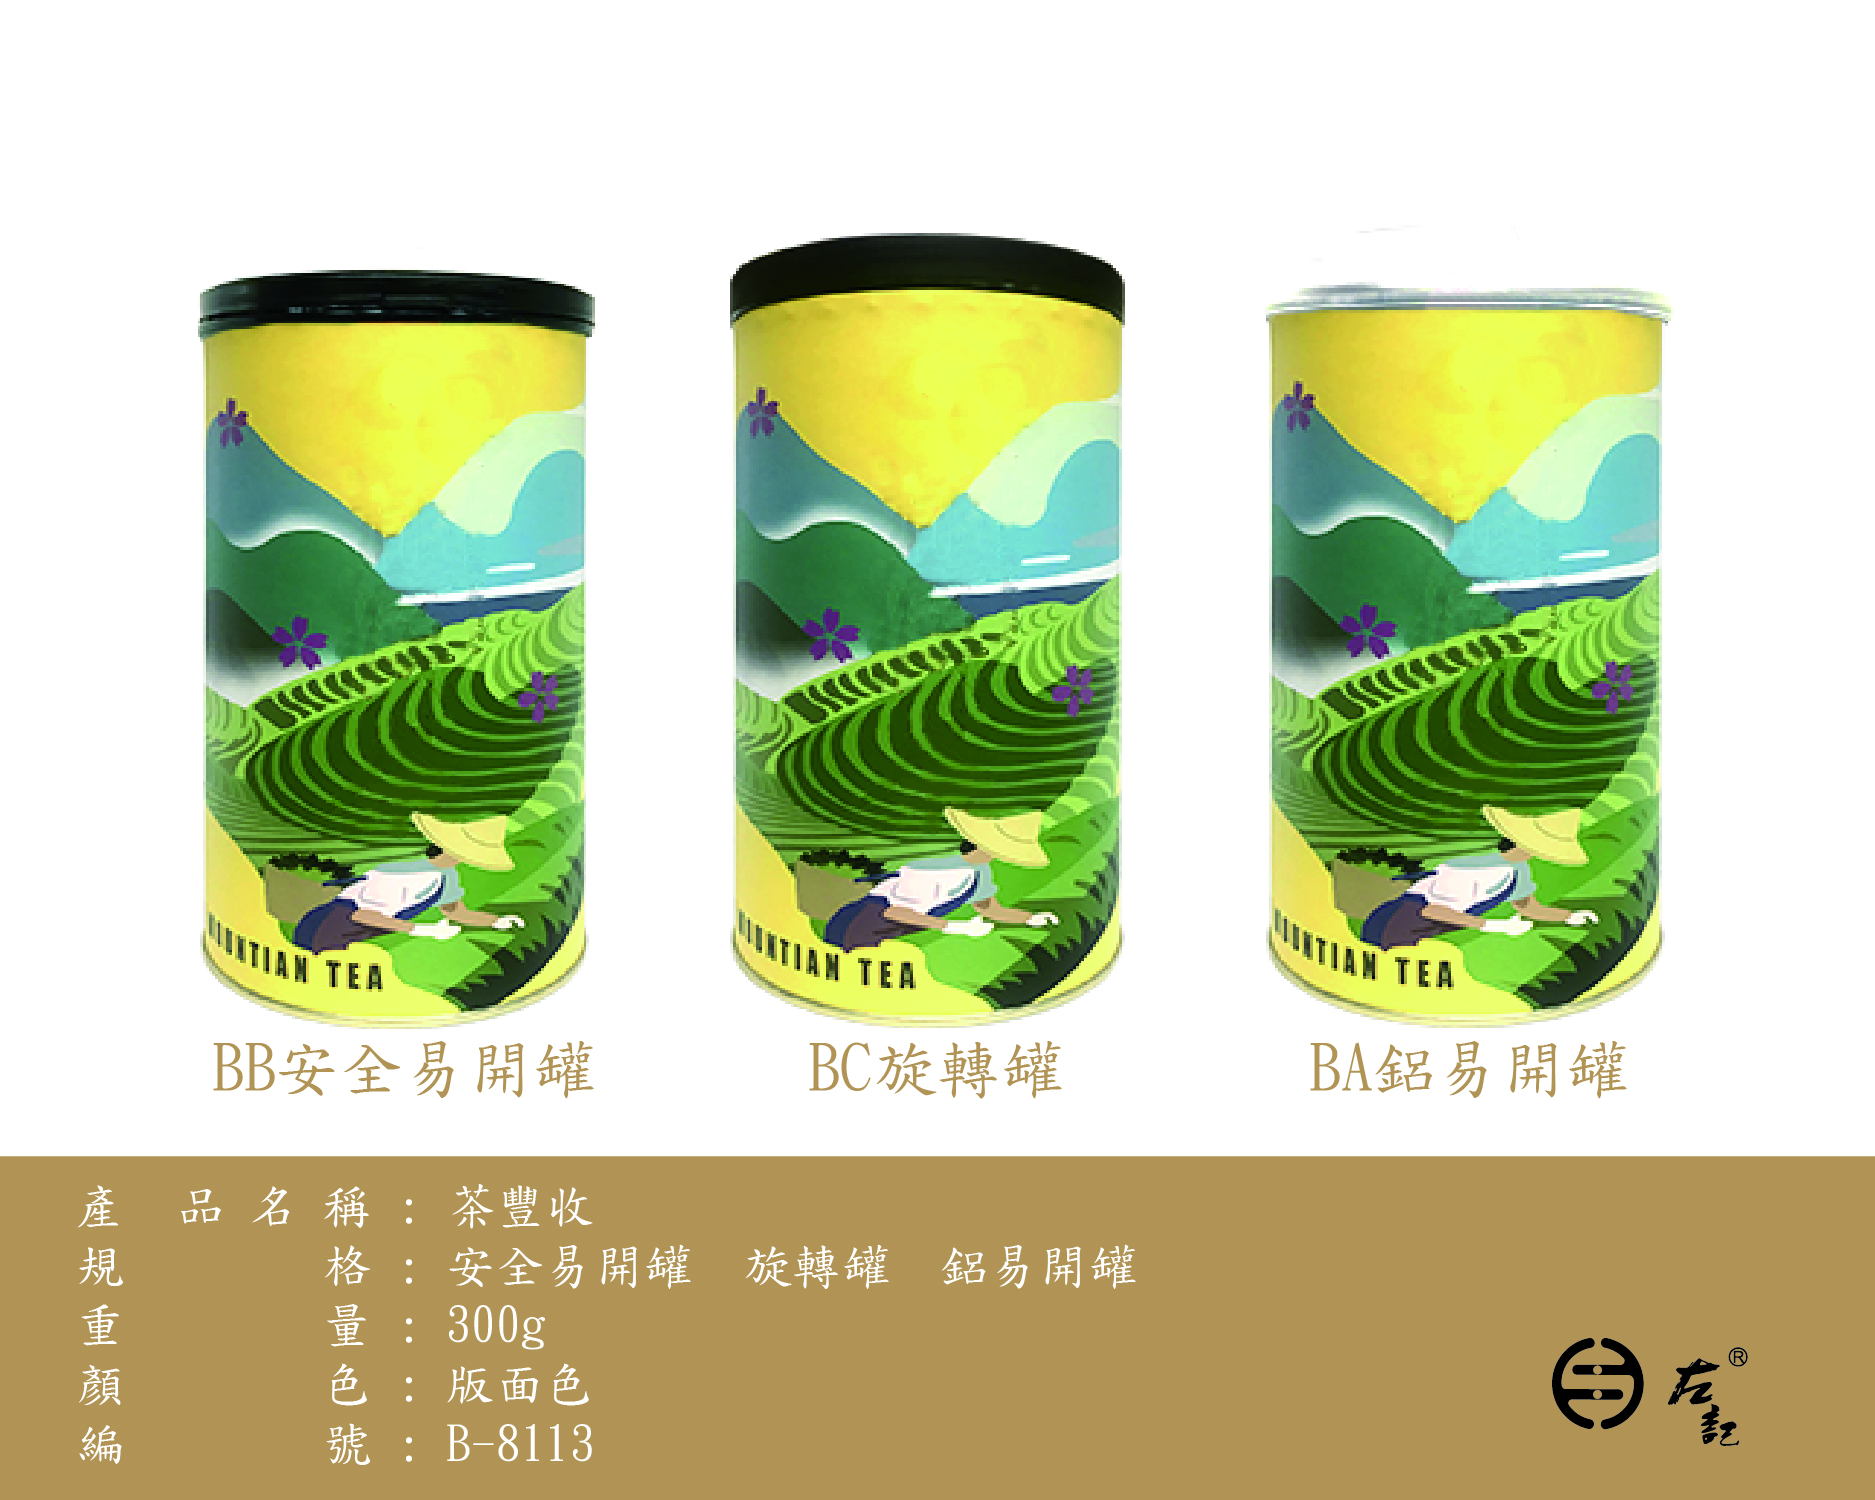 B-8113茶豐收-300g紙罐